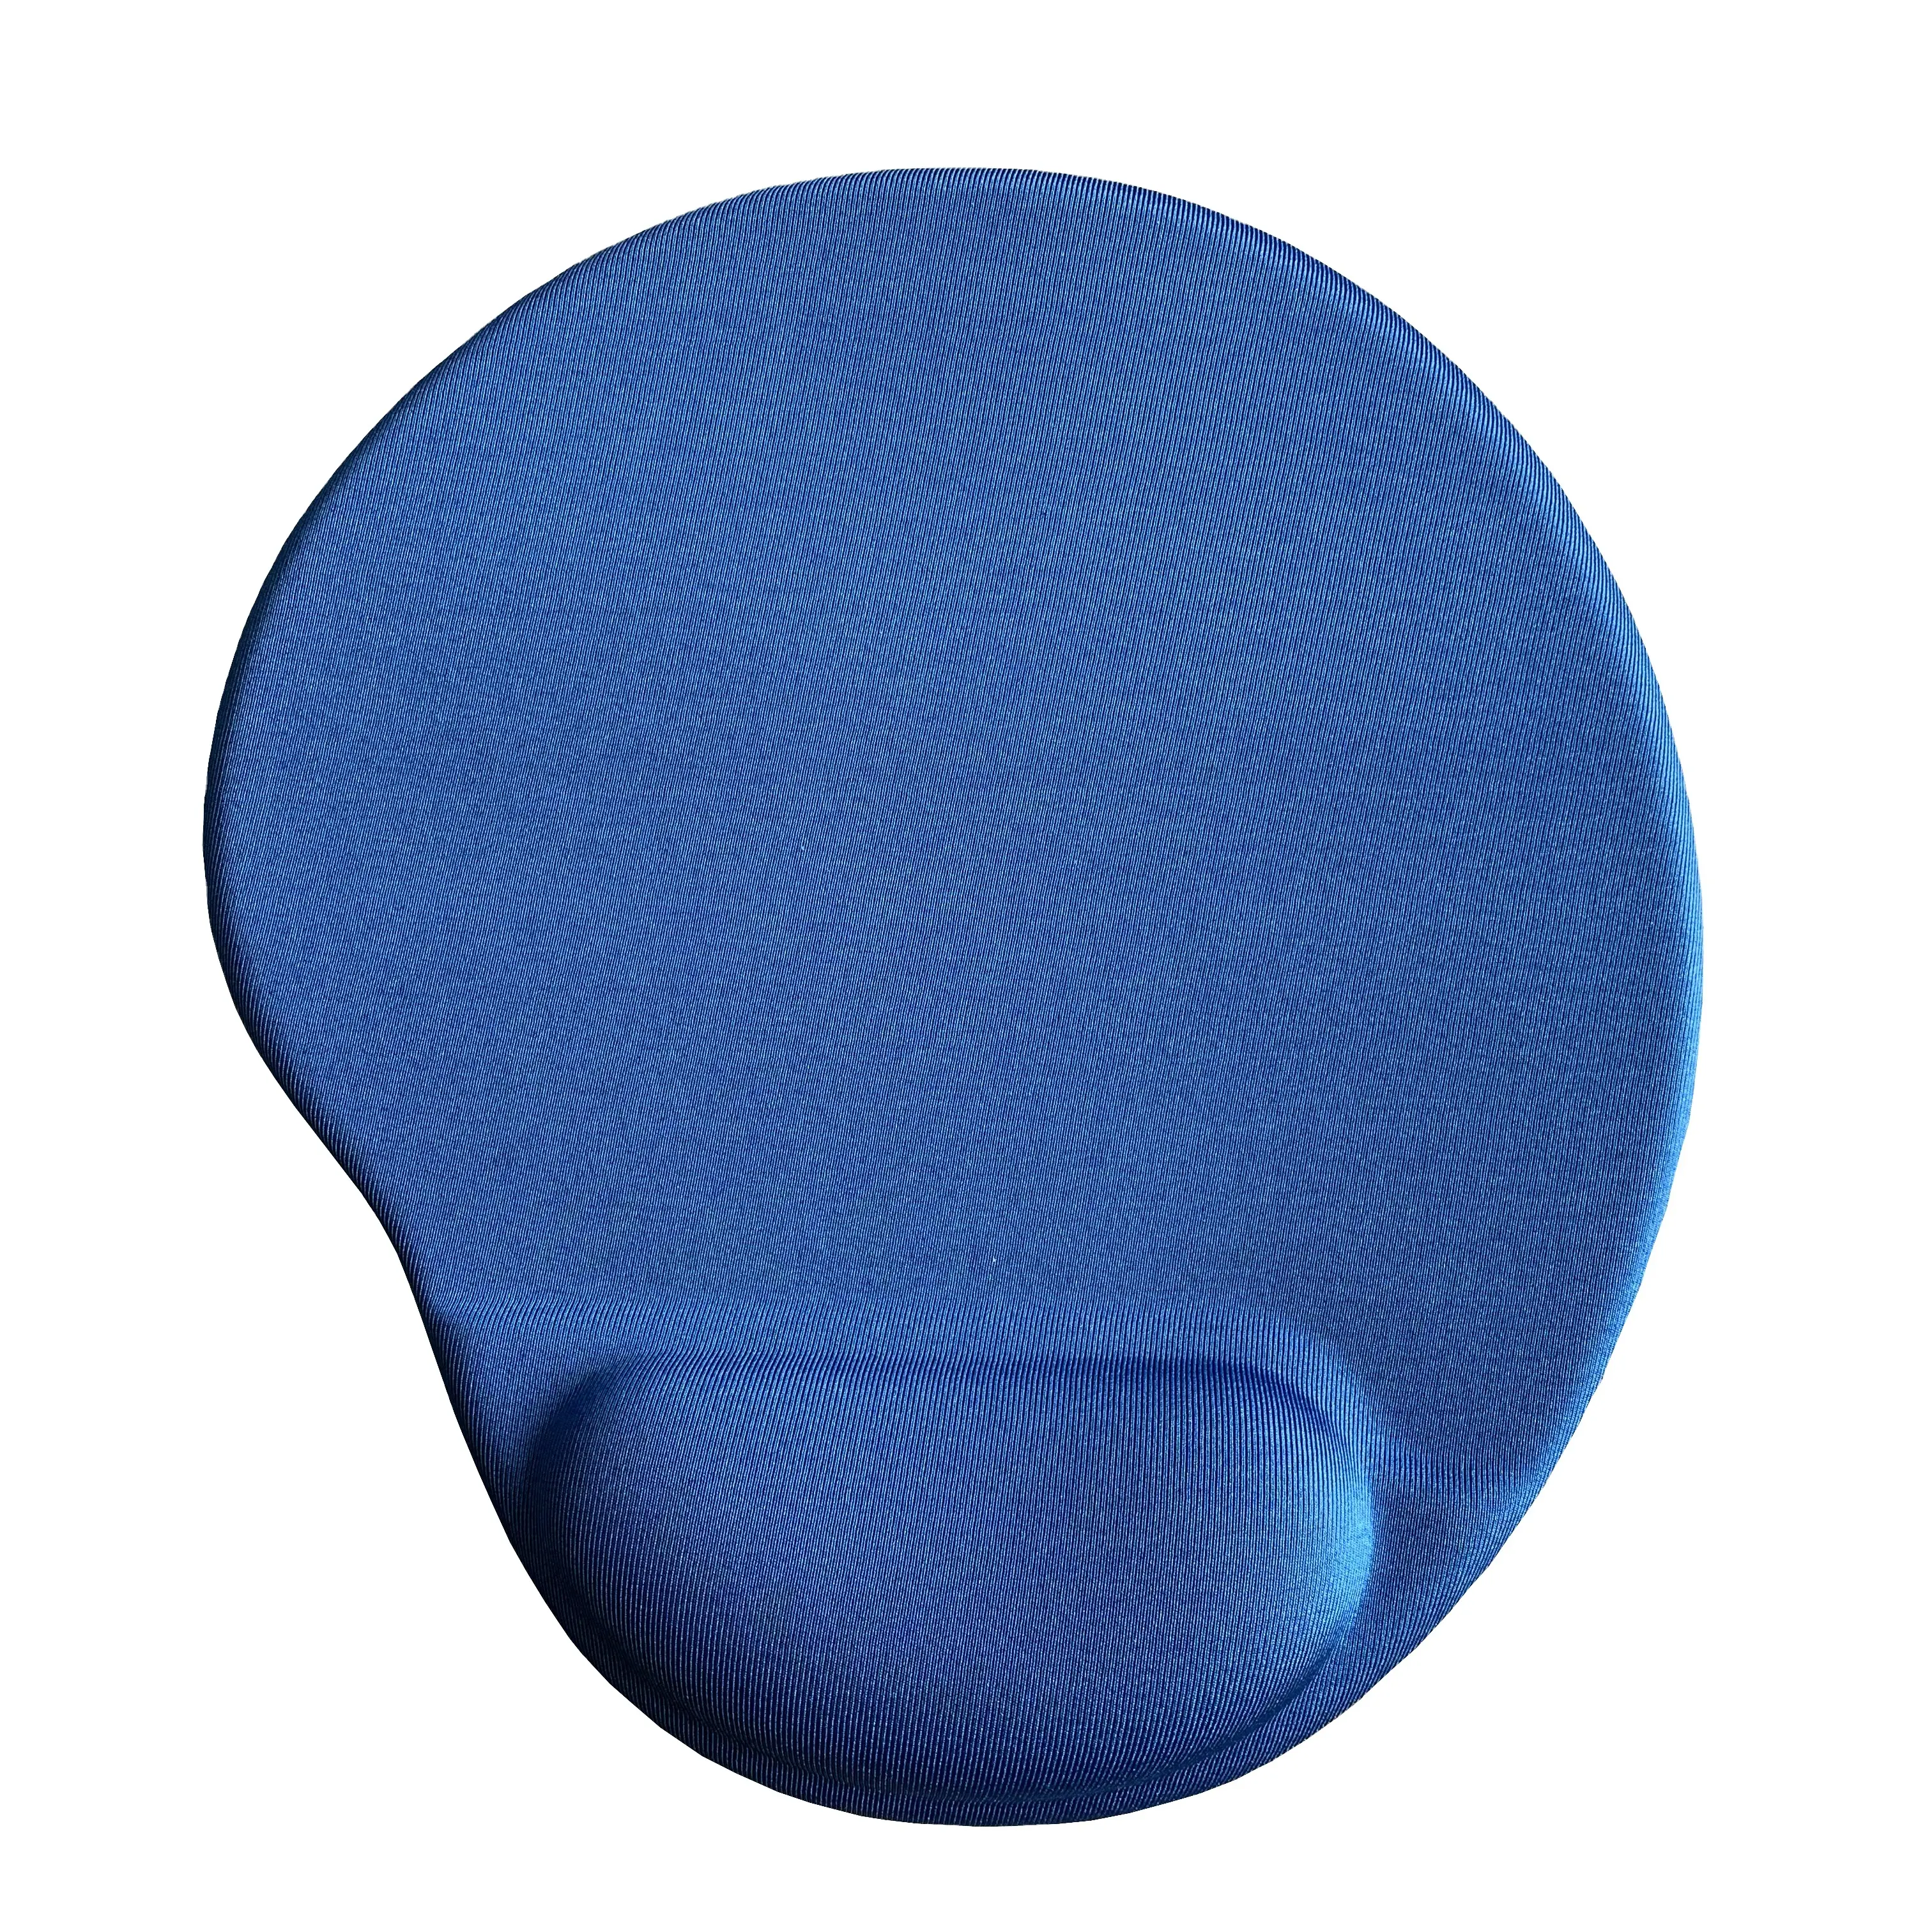 3danti de derrape de espuma cojín de ratón con el resto de muñeca de juego Pad alfombra Negro Azul estado de Color de estilo apoyo Mousepad Material de tipo de origen de